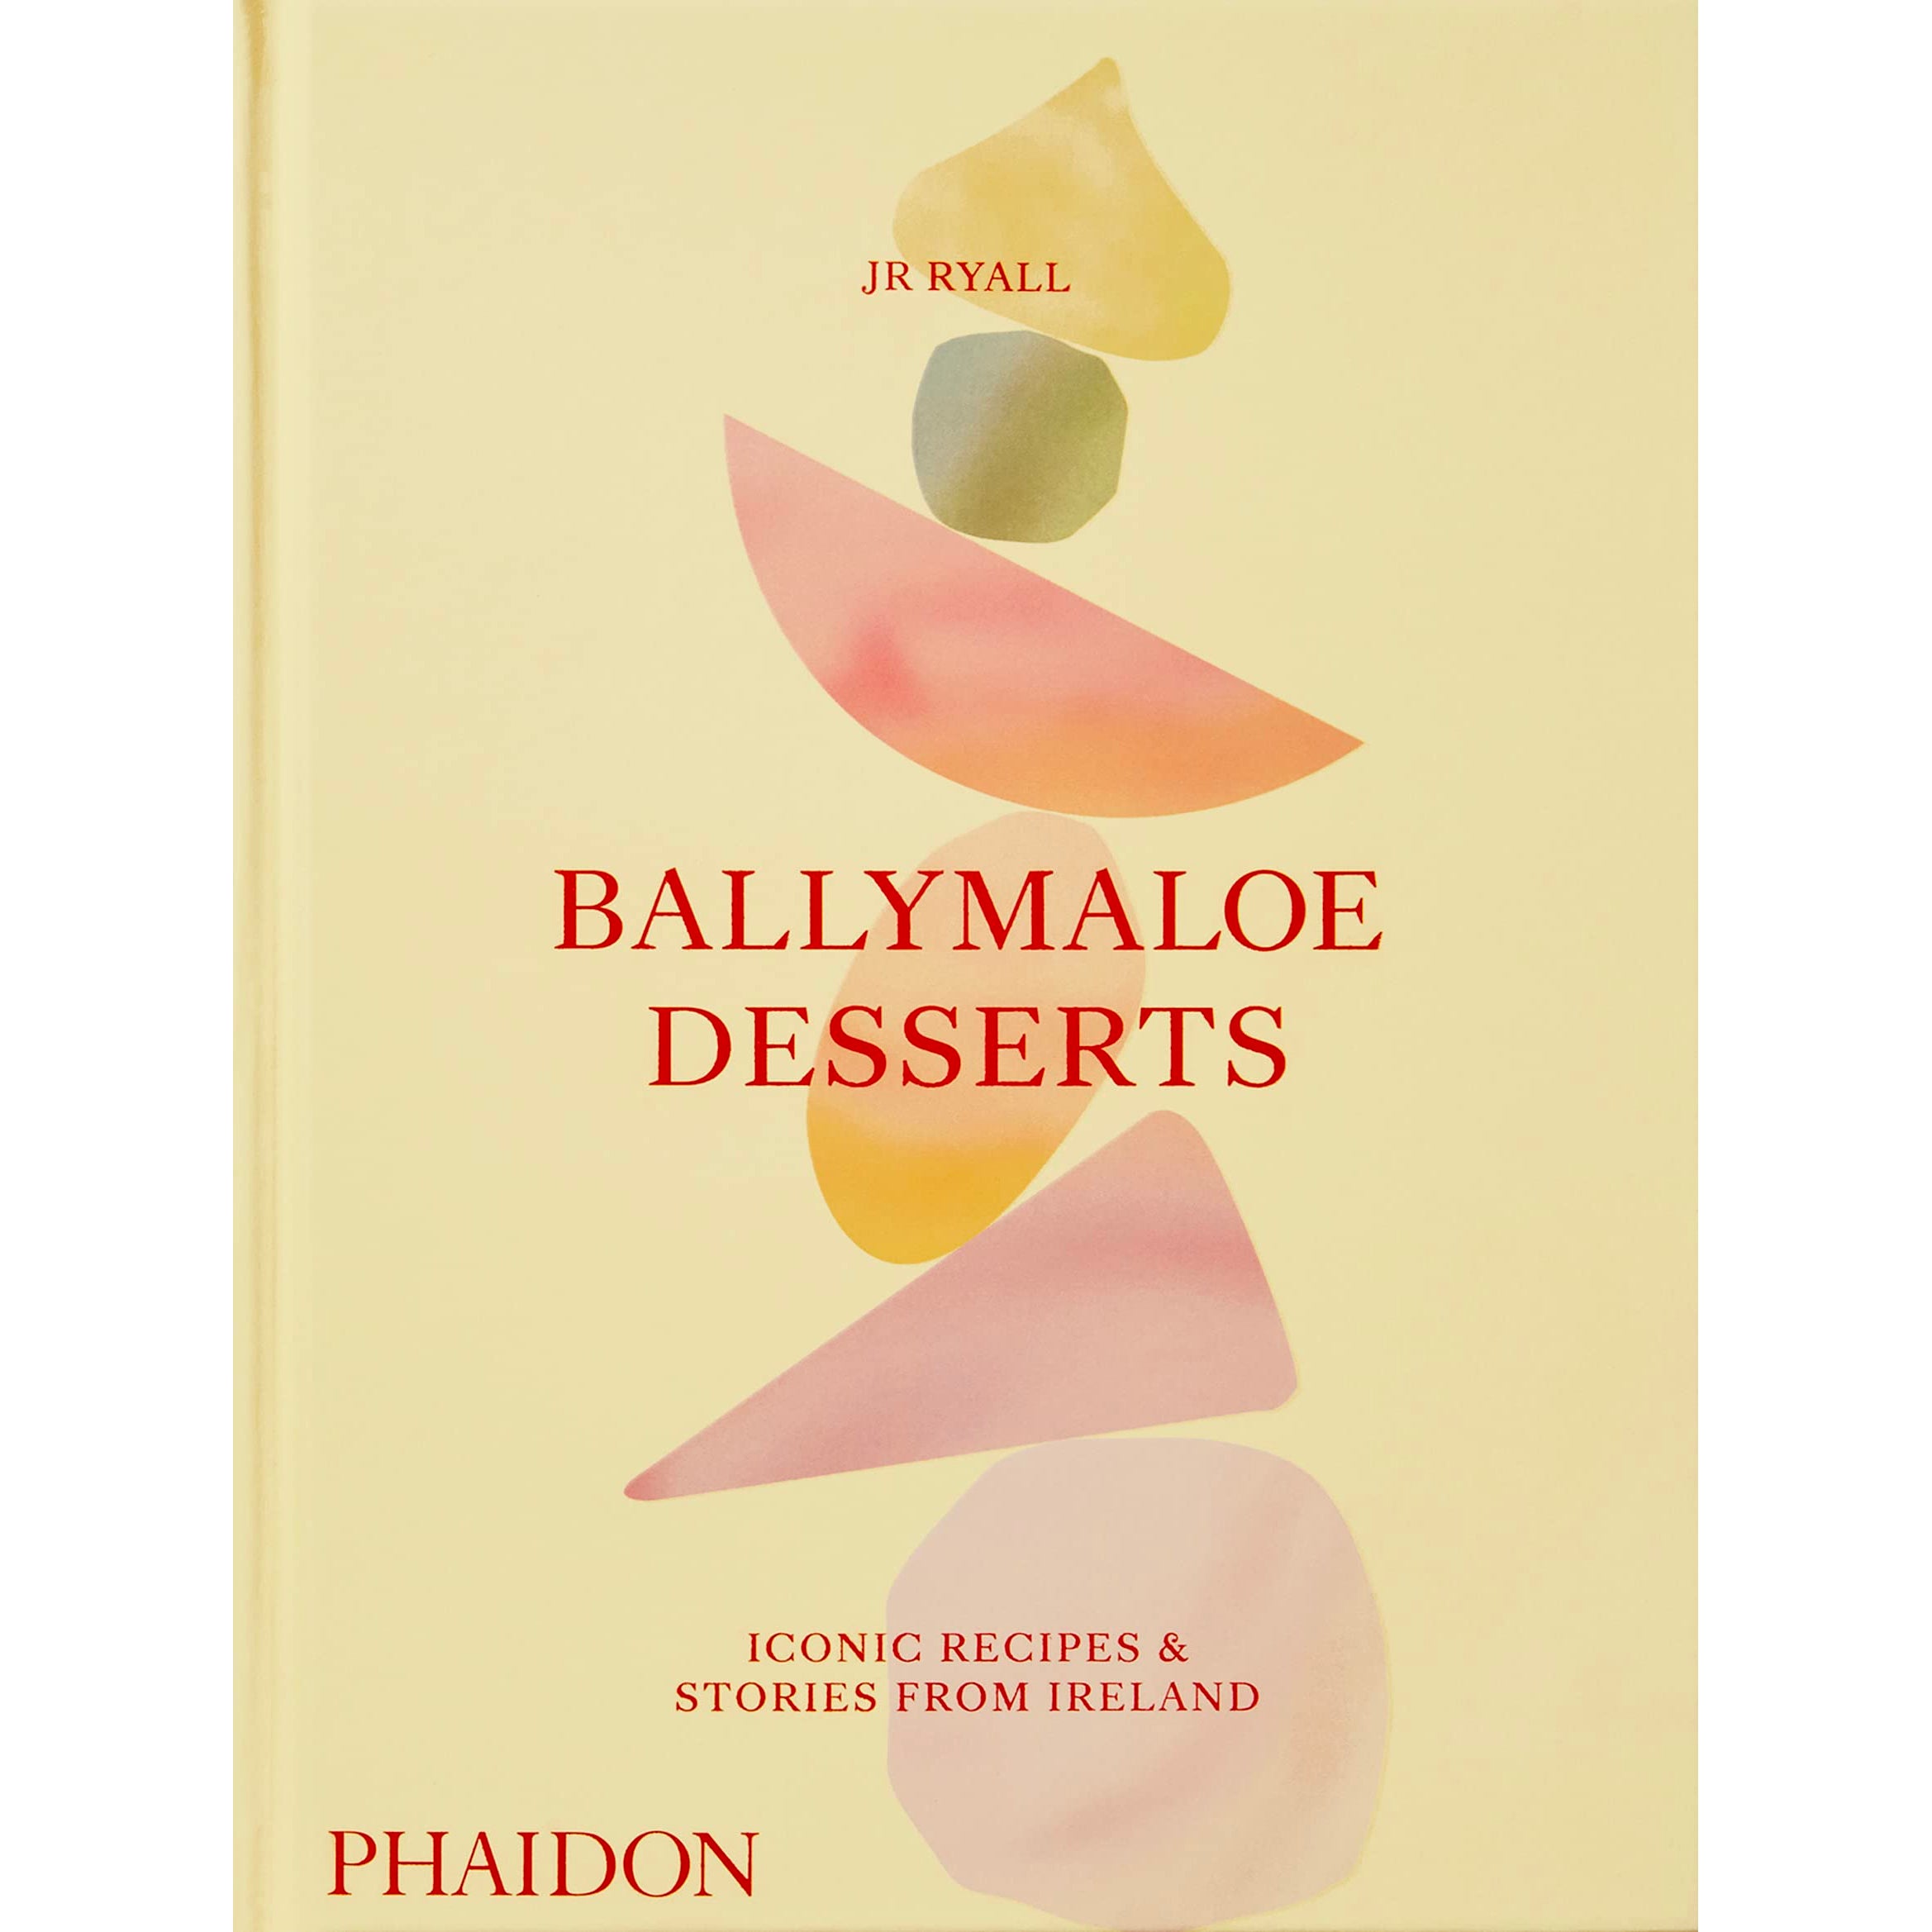 Ballymaloe Desserts book cover âfeaturing pastel geometric shapes against an off-white backgroundâ against a white background.